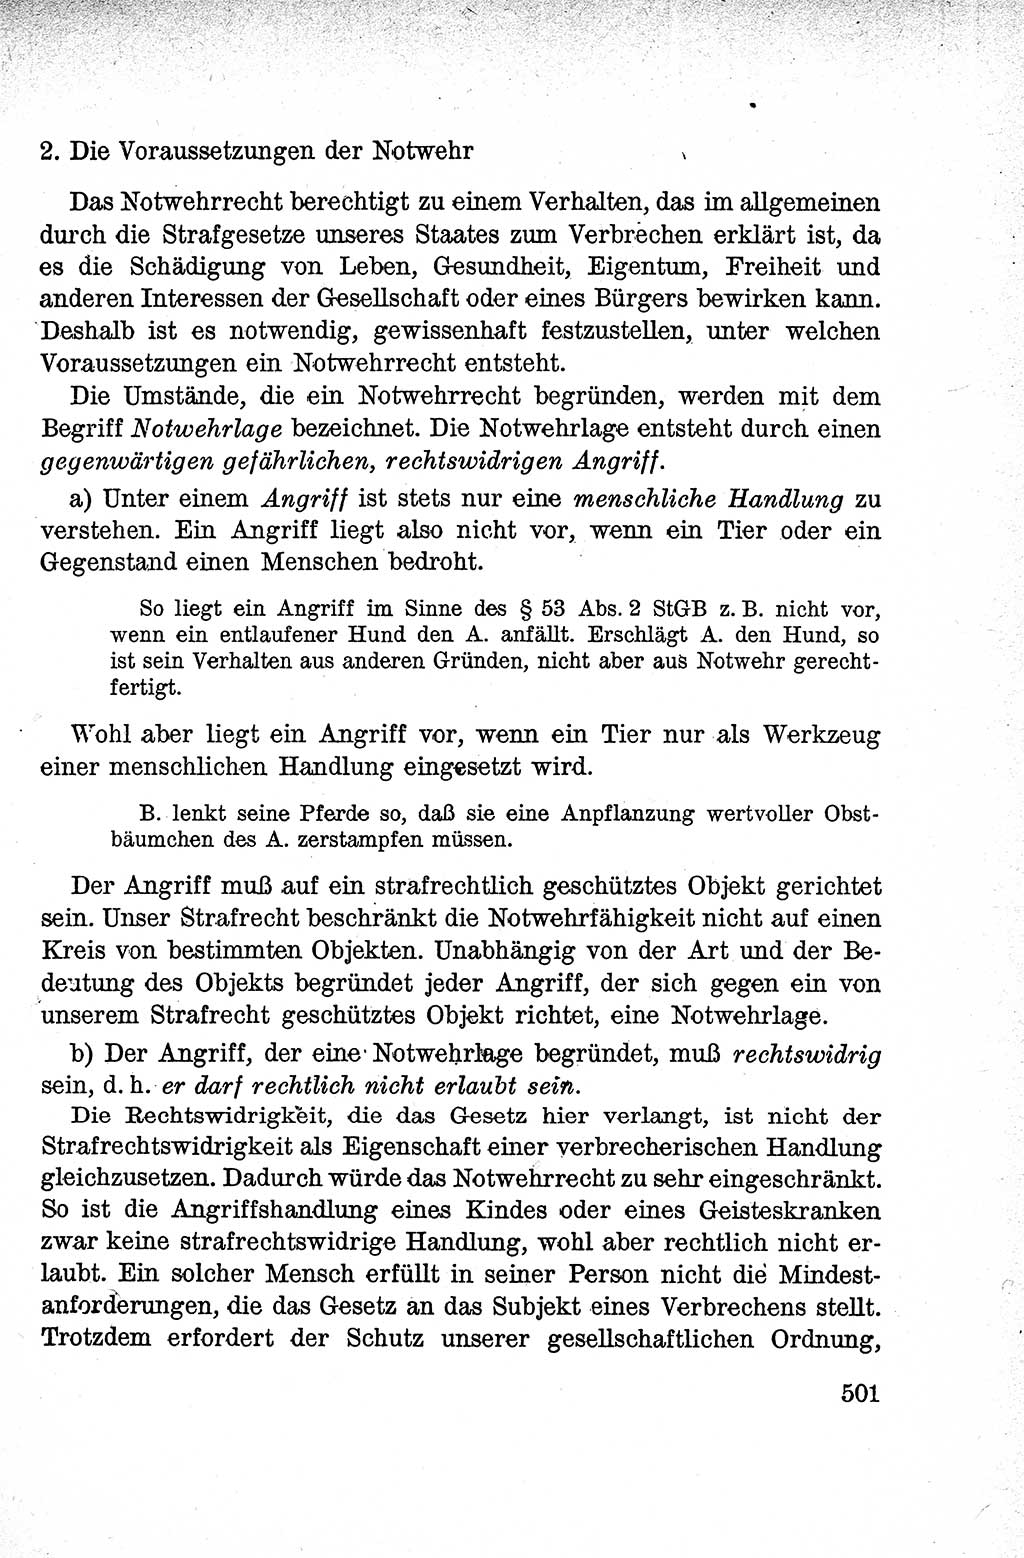 Lehrbuch des Strafrechts der Deutschen Demokratischen Republik (DDR), Allgemeiner Teil 1959, Seite 501 (Lb. Strafr. DDR AT 1959, S. 501)